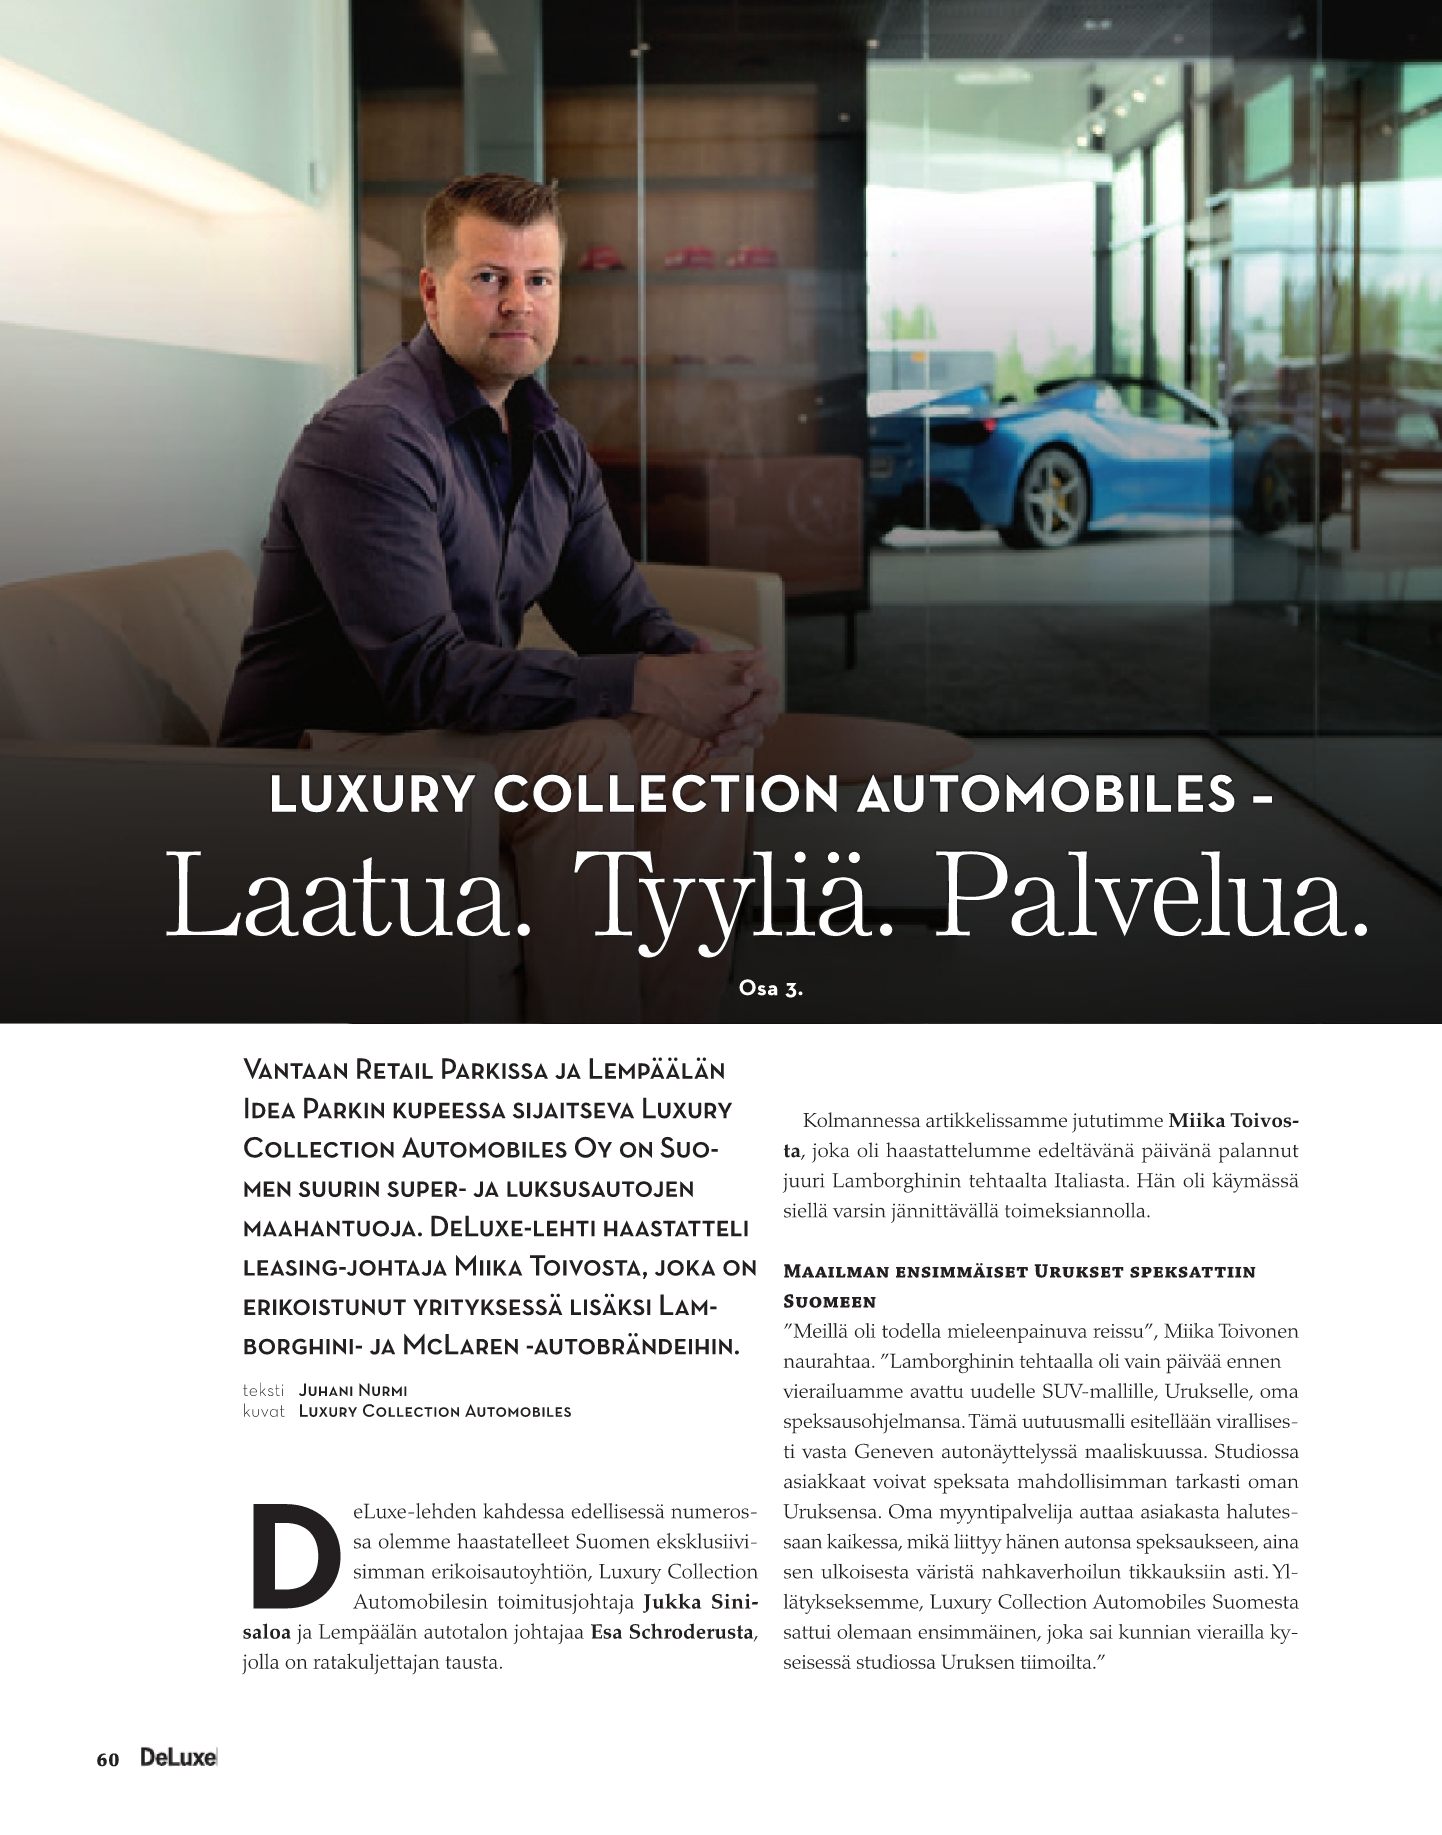 Luxury Collection Automobiles - Laatua. Tyyliä. Palvelua.